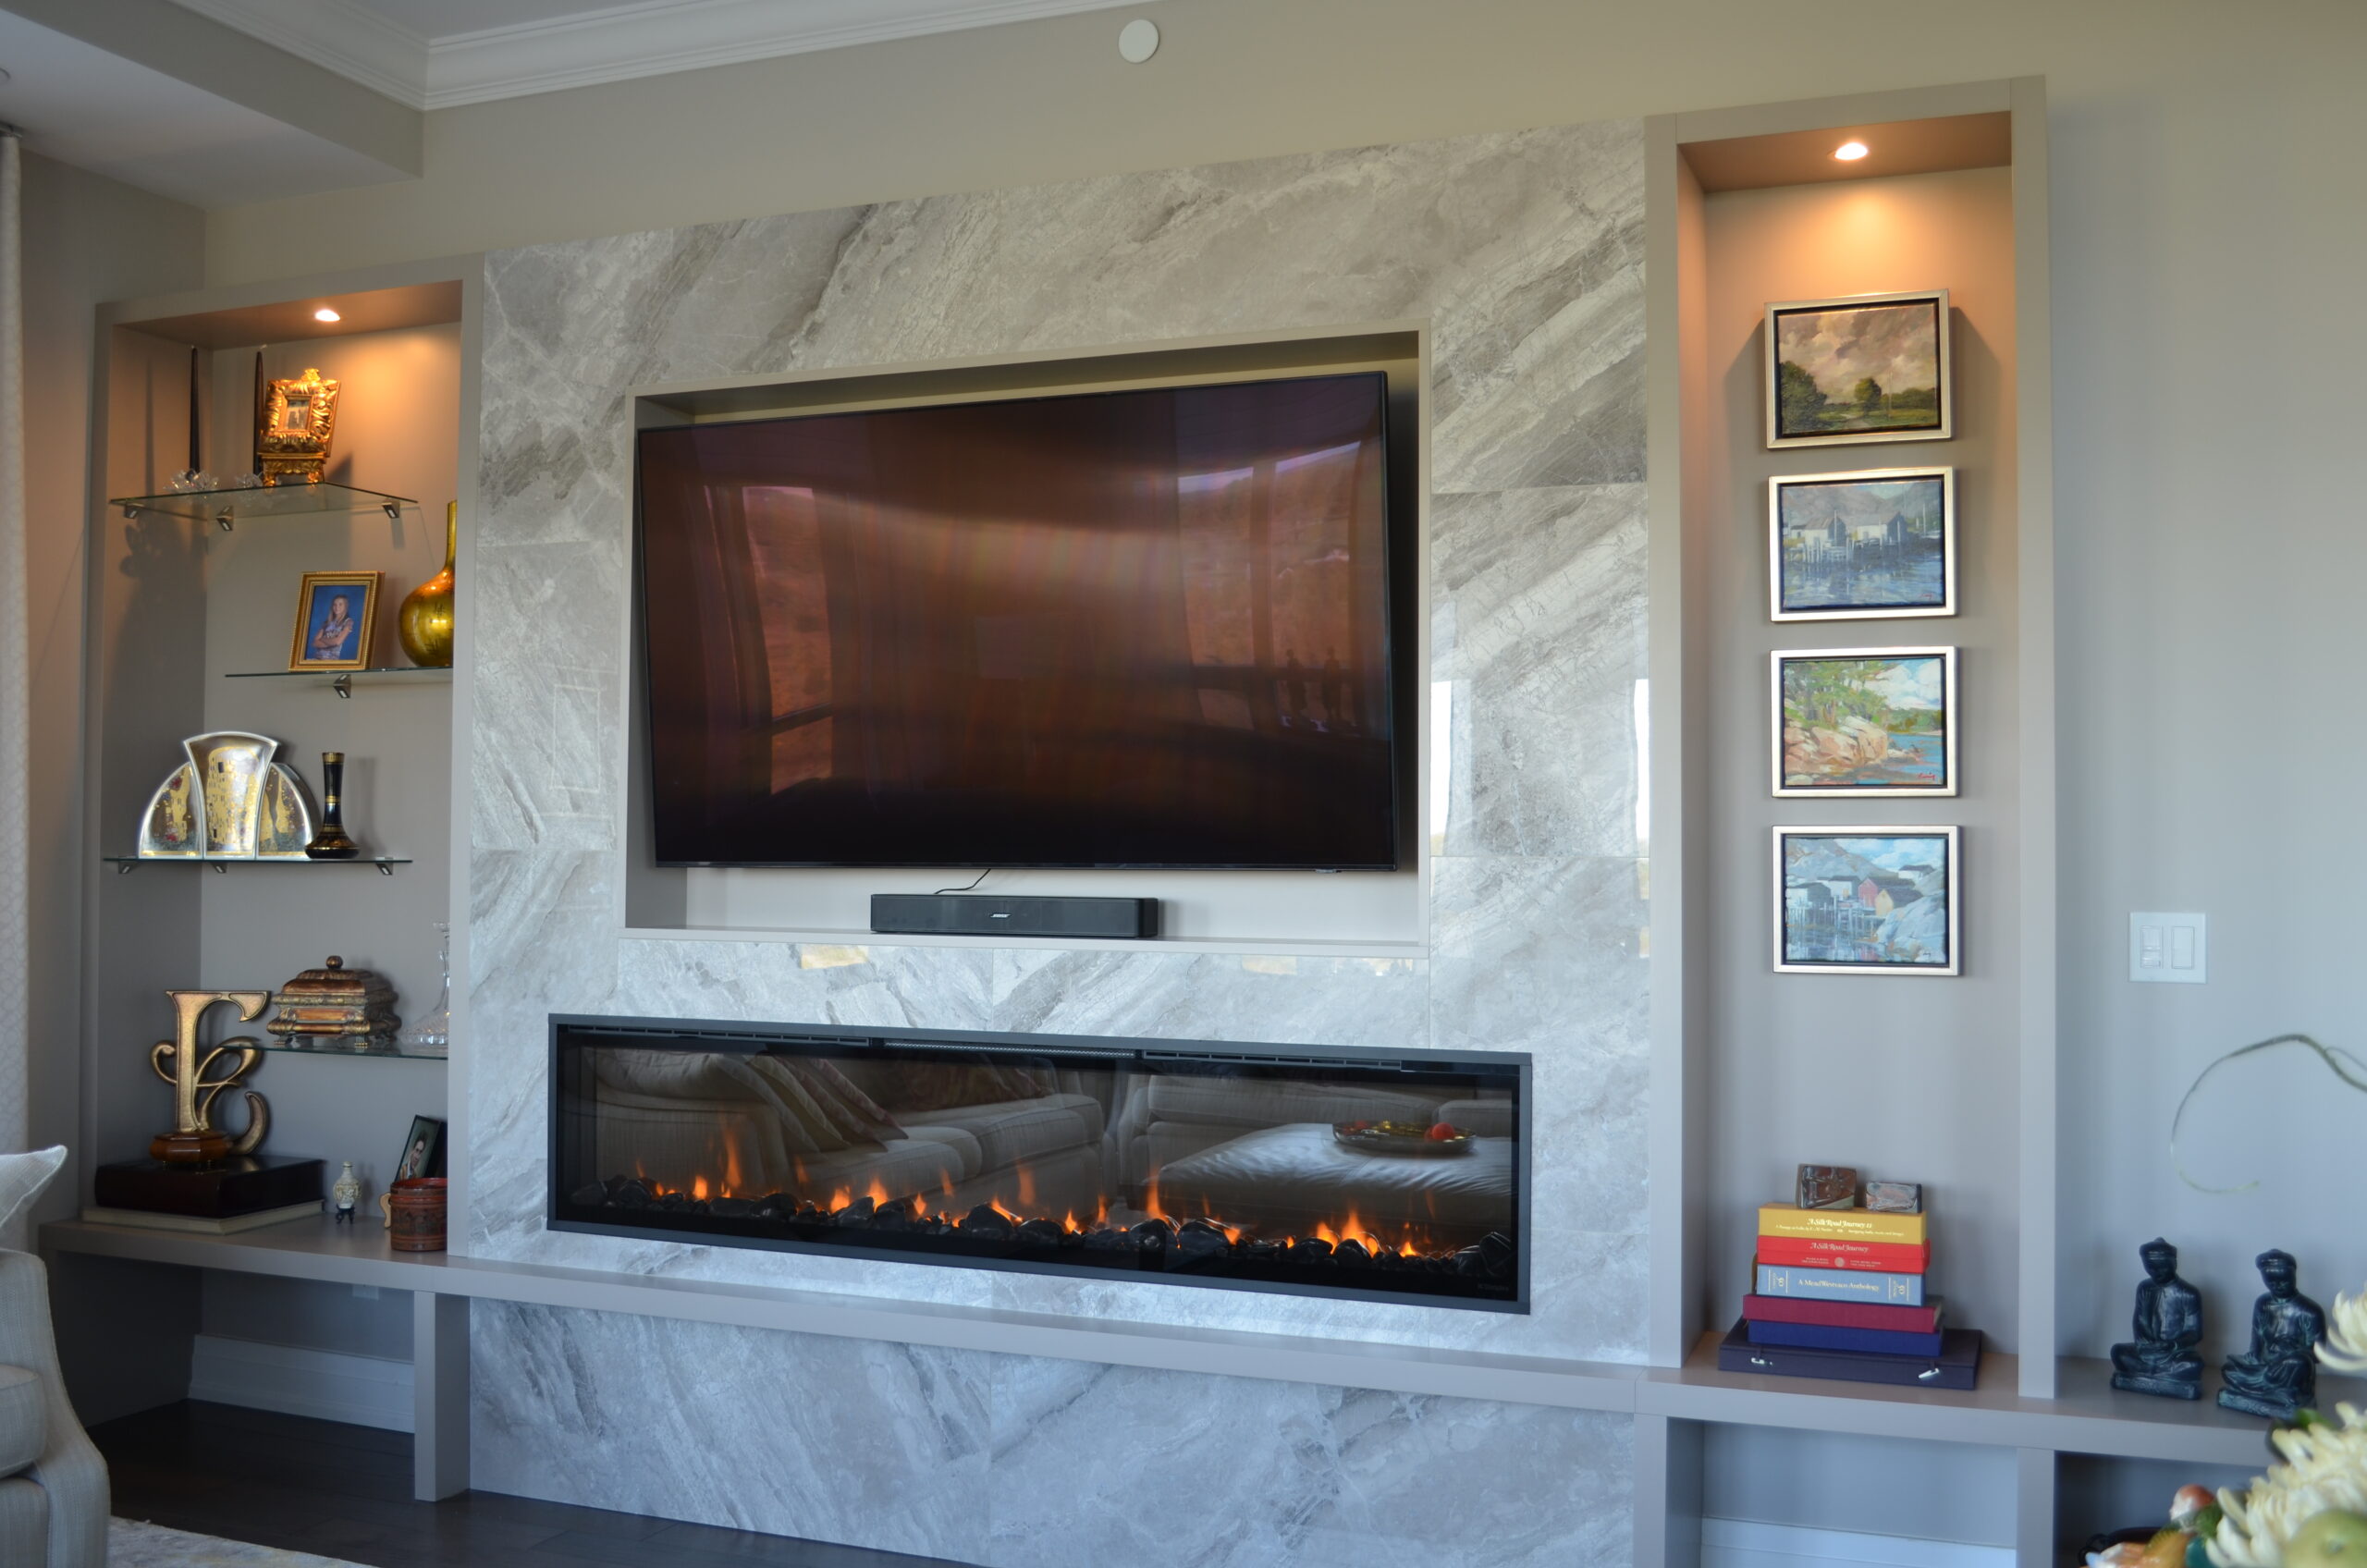 Dimplex XLF74 Ignite fireplace in a custom design. 